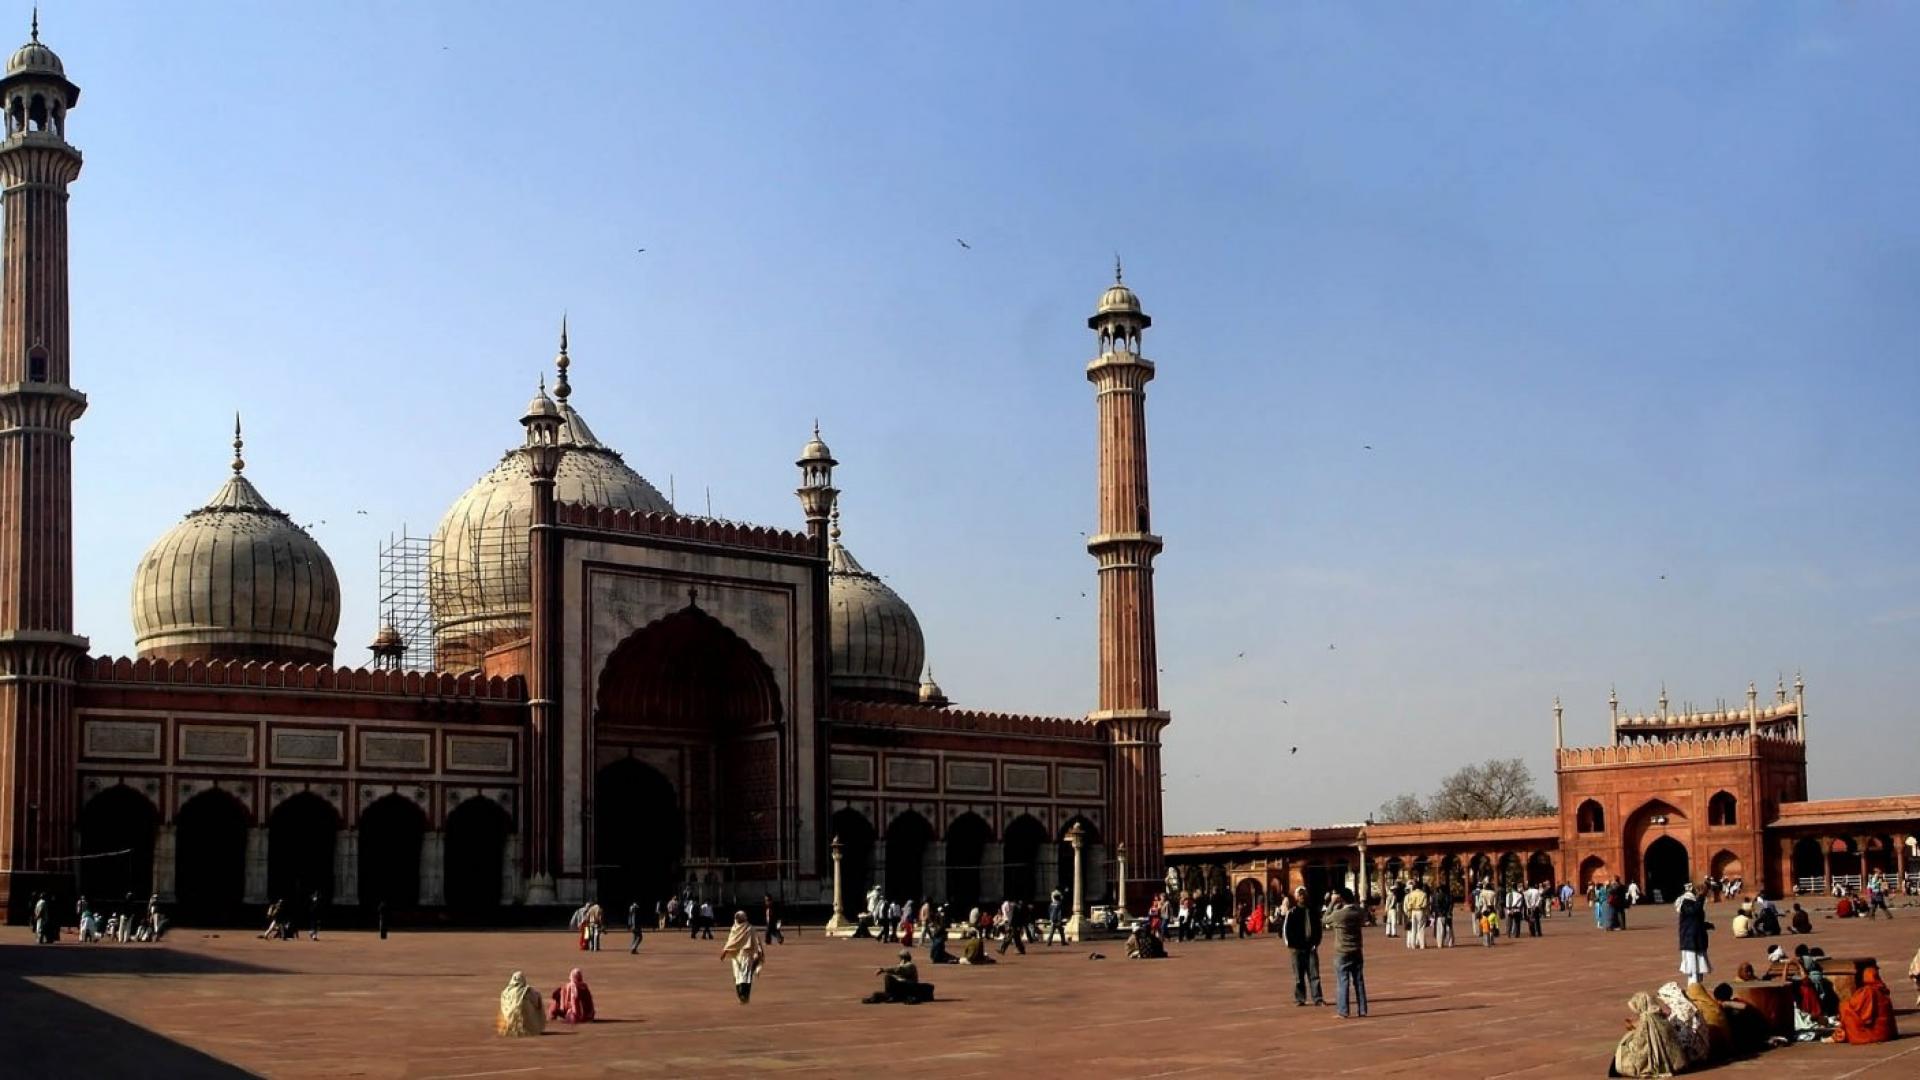 delhi hd wallpaper,costruzione,moschea,luoghi santi,khanqah,architettura